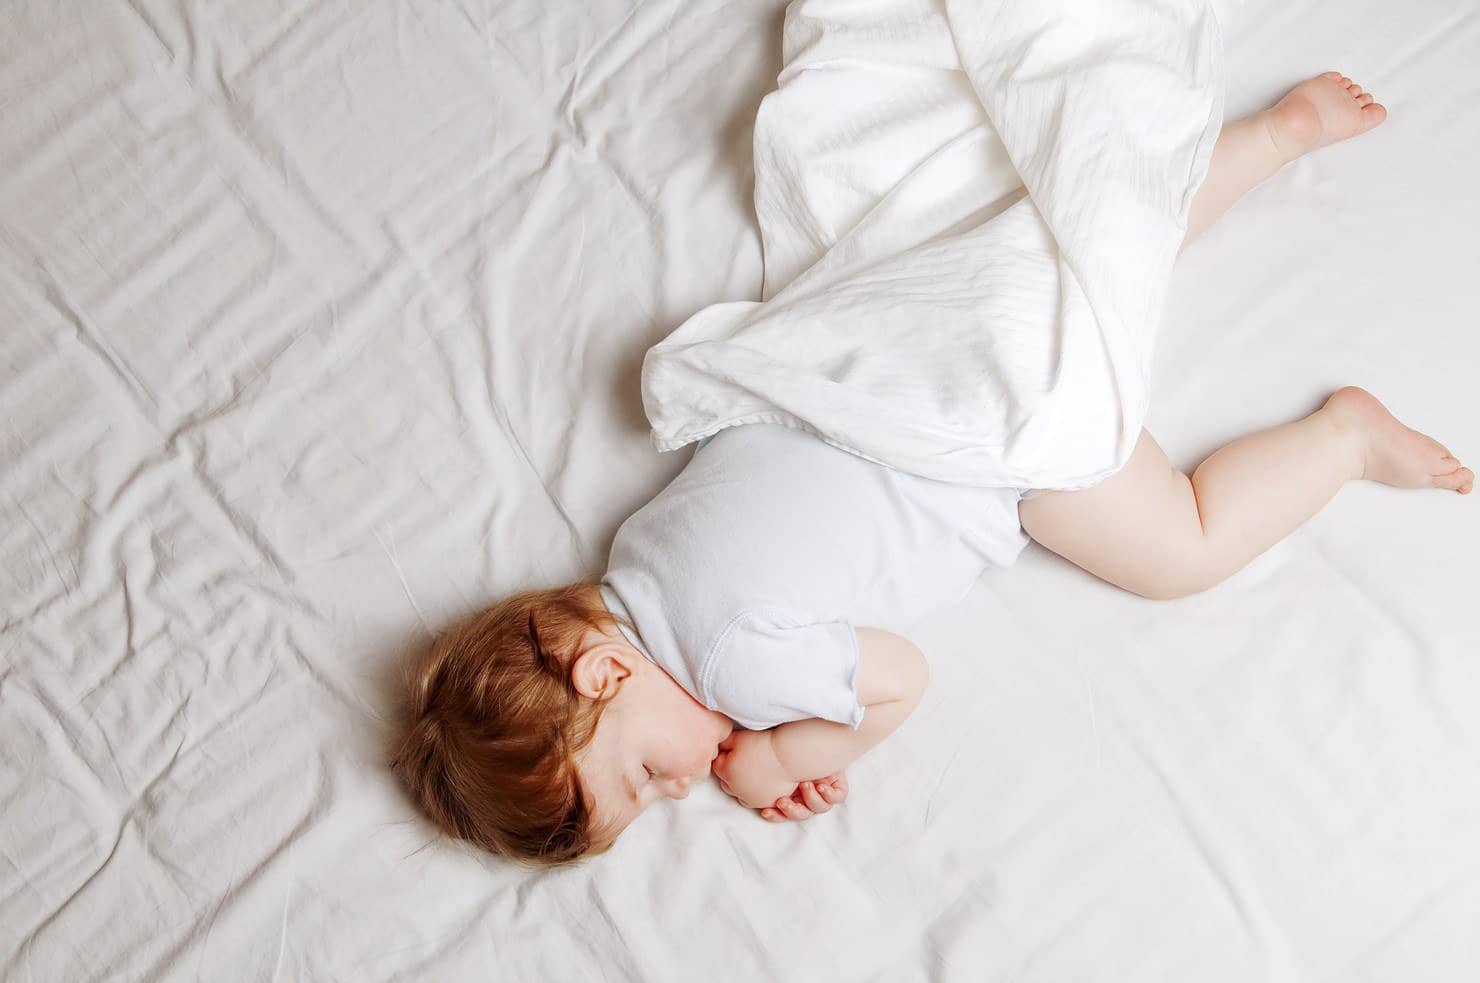 slaapcoach legt uit hoe je een baby kan slaaptrainen